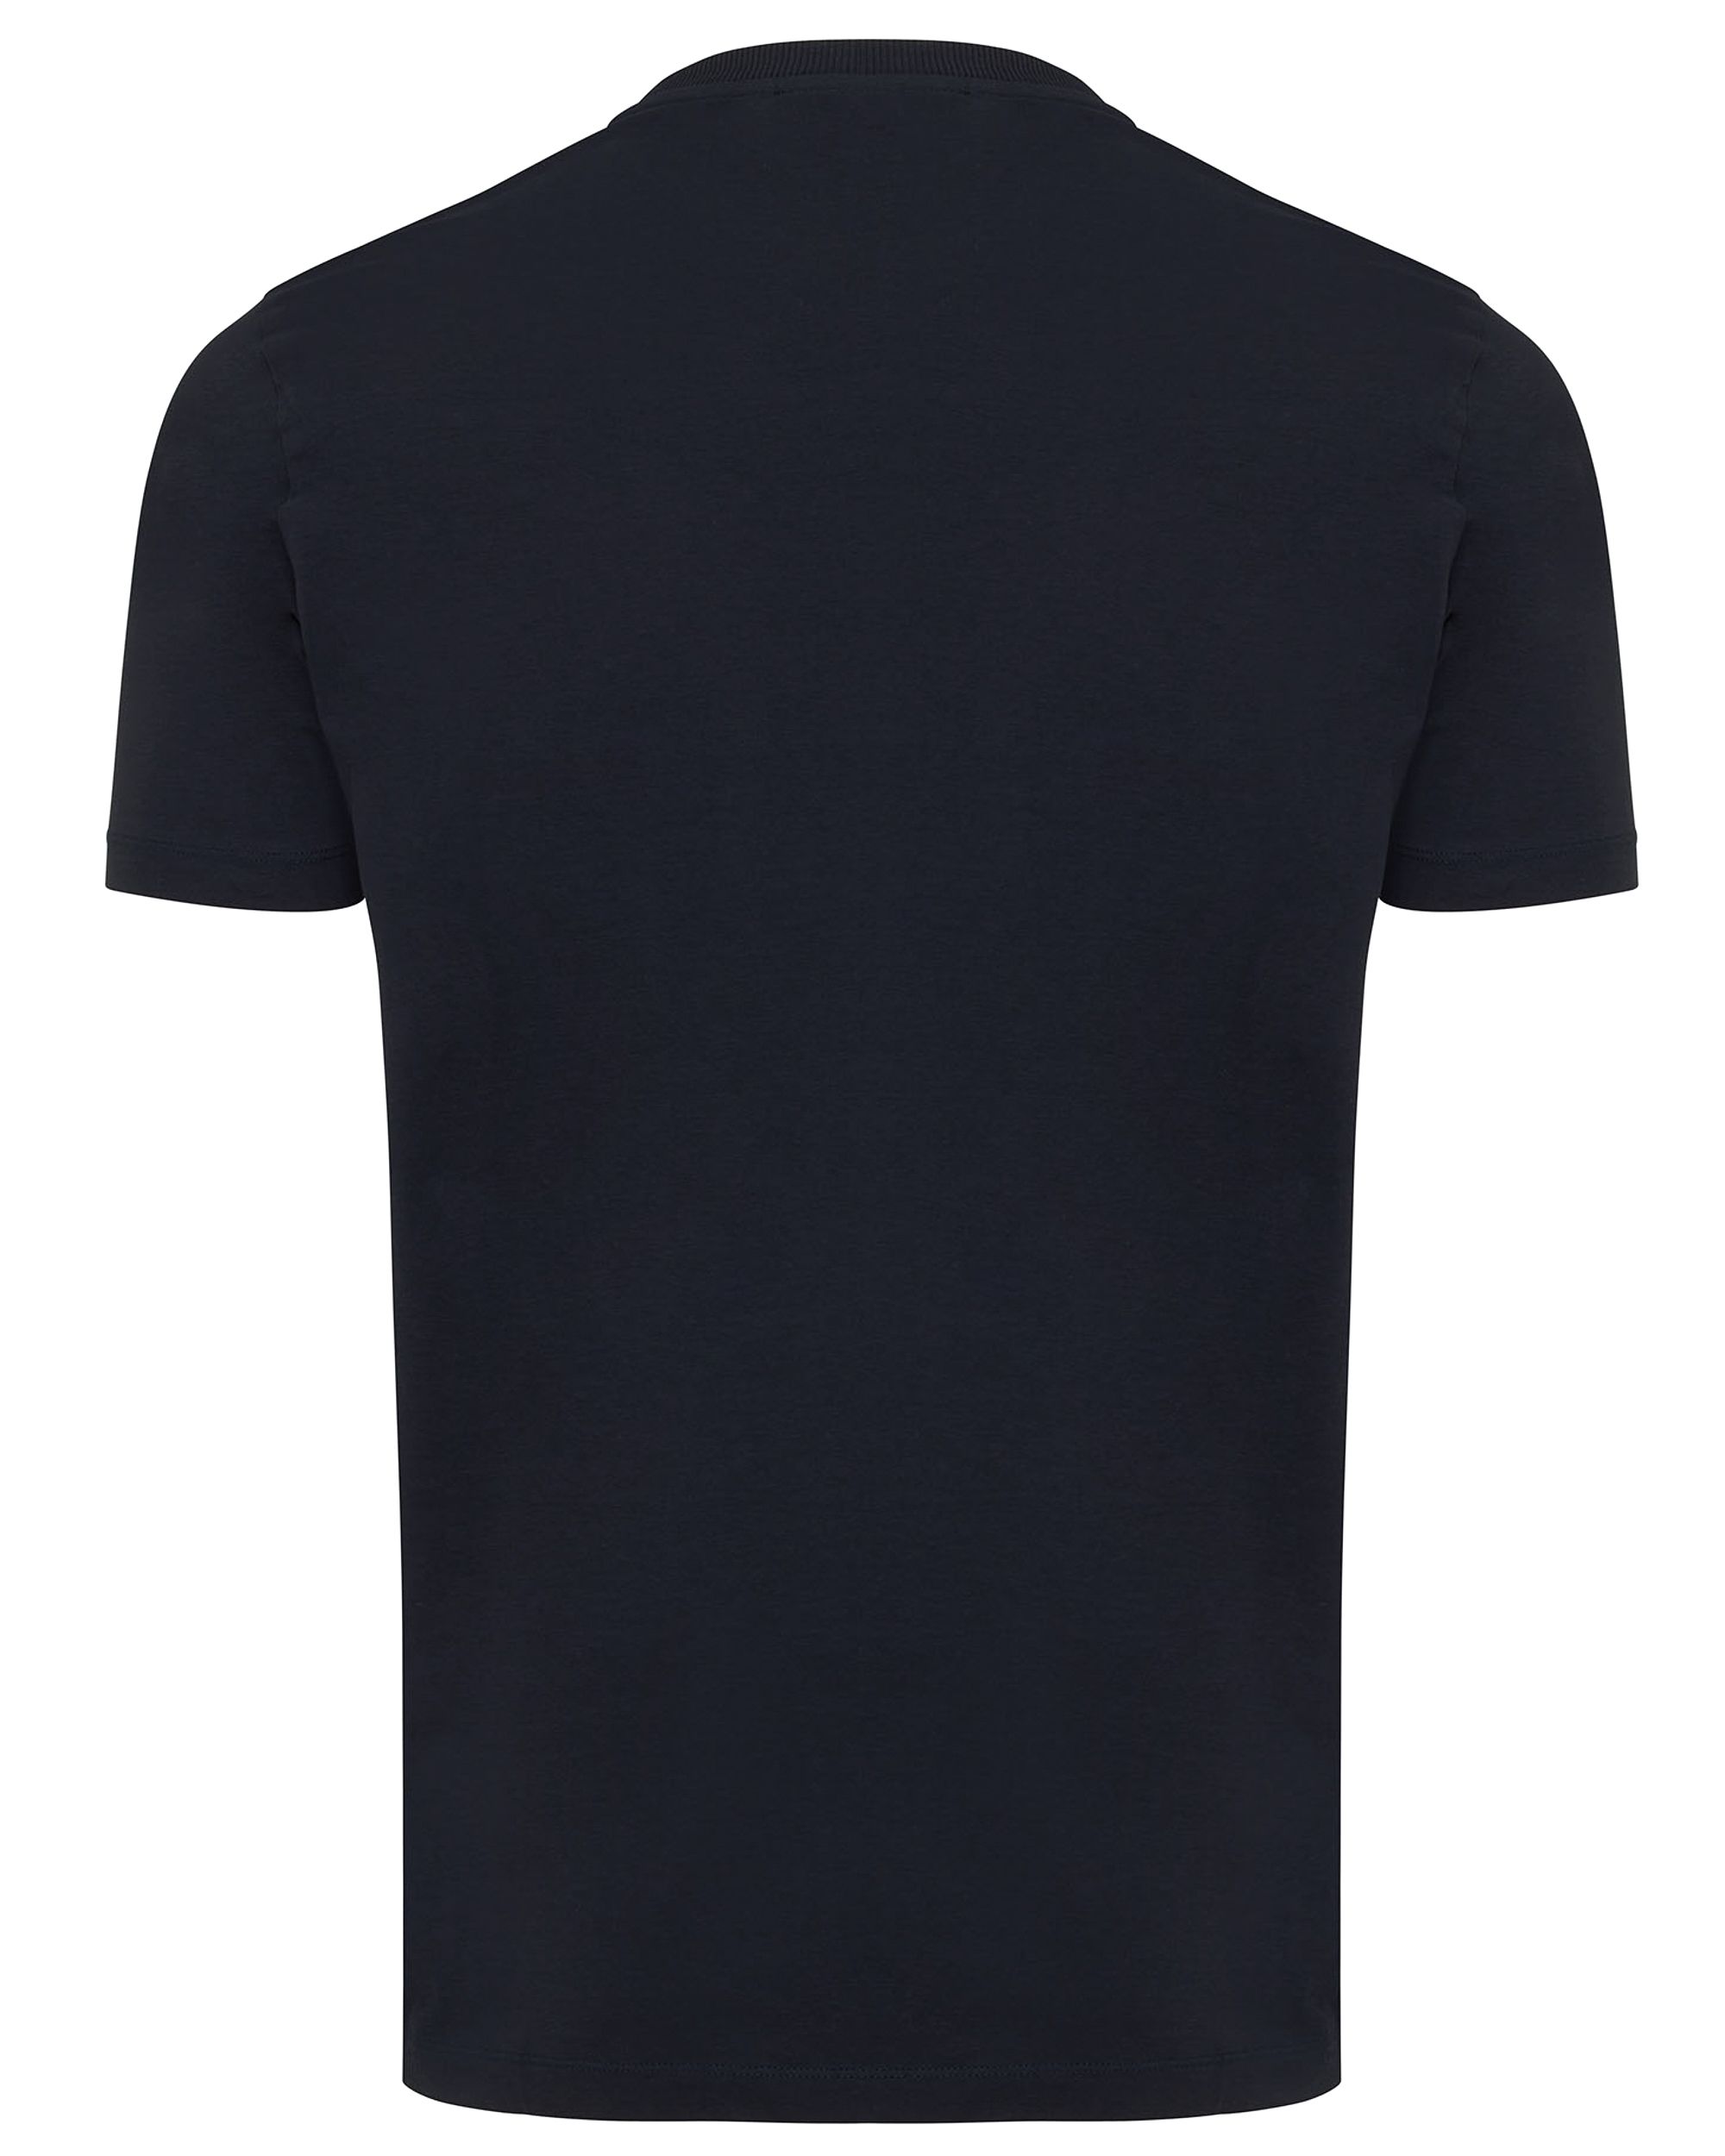 Genti T-shirt KM Donker blauw 092156-001-L